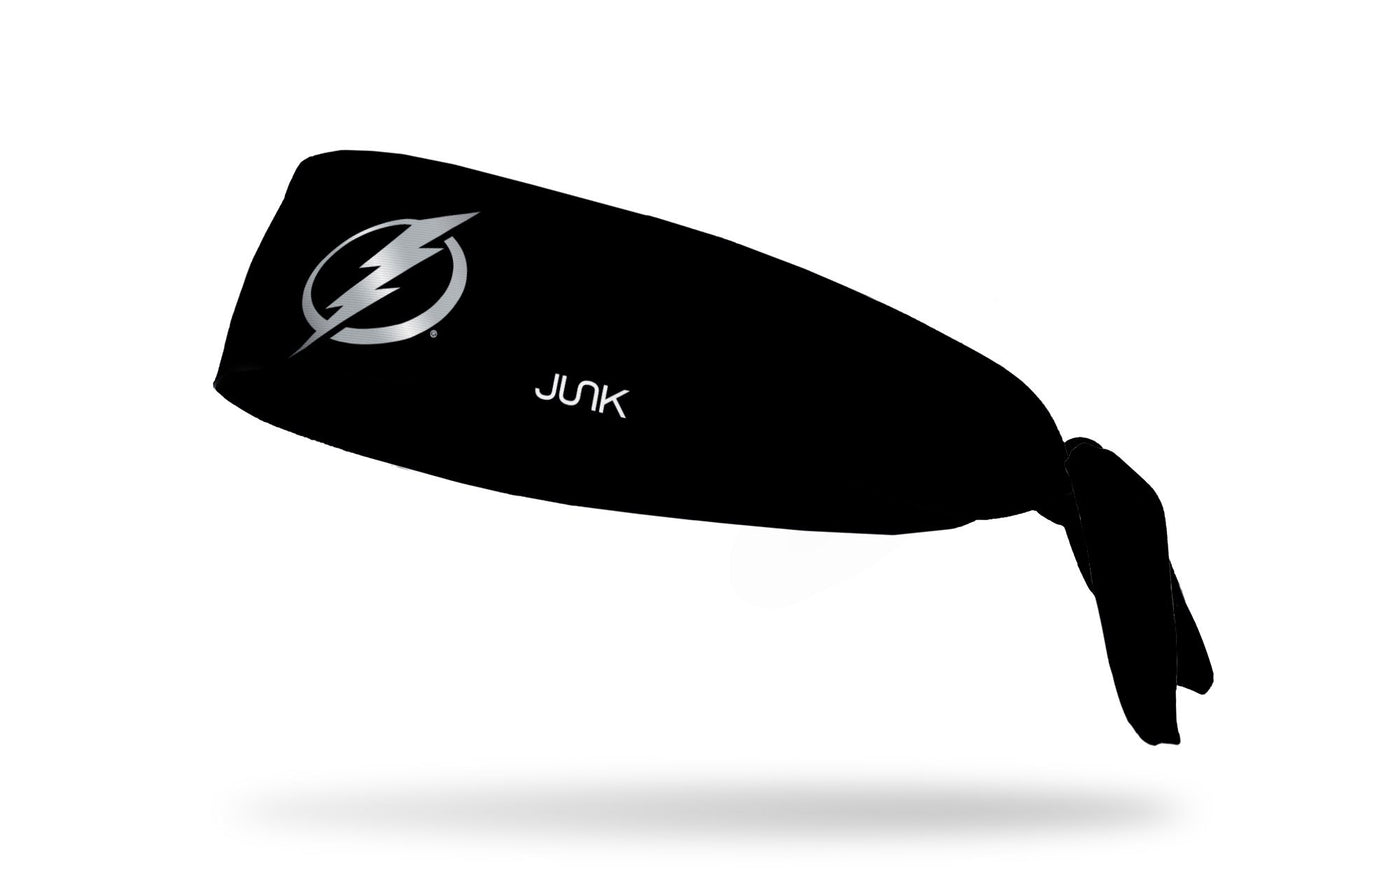 Tampa Bay Lightning: Logo Black Tie Headband - Black by Junk Brands